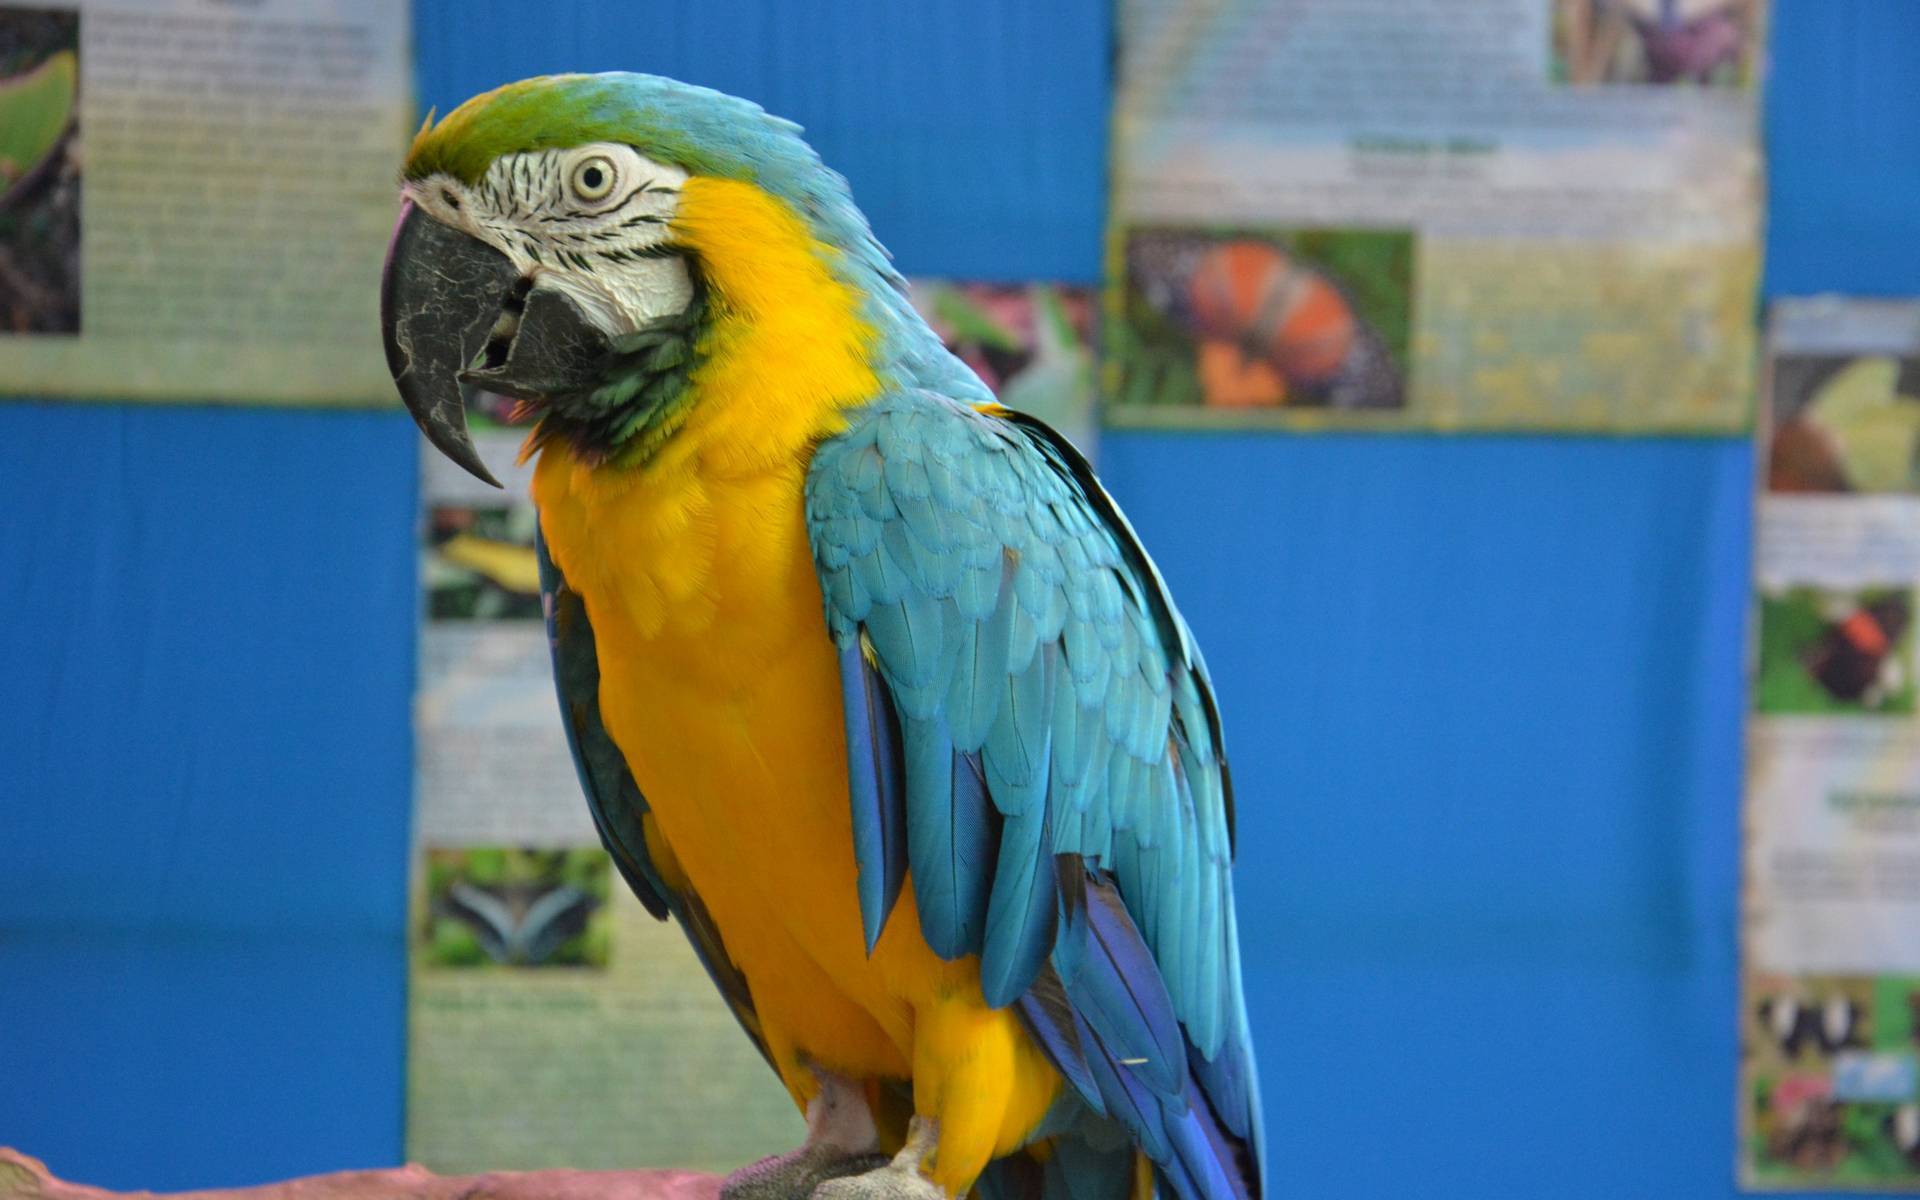 Попугай ара. образ жизни и среда обитания попугая ара